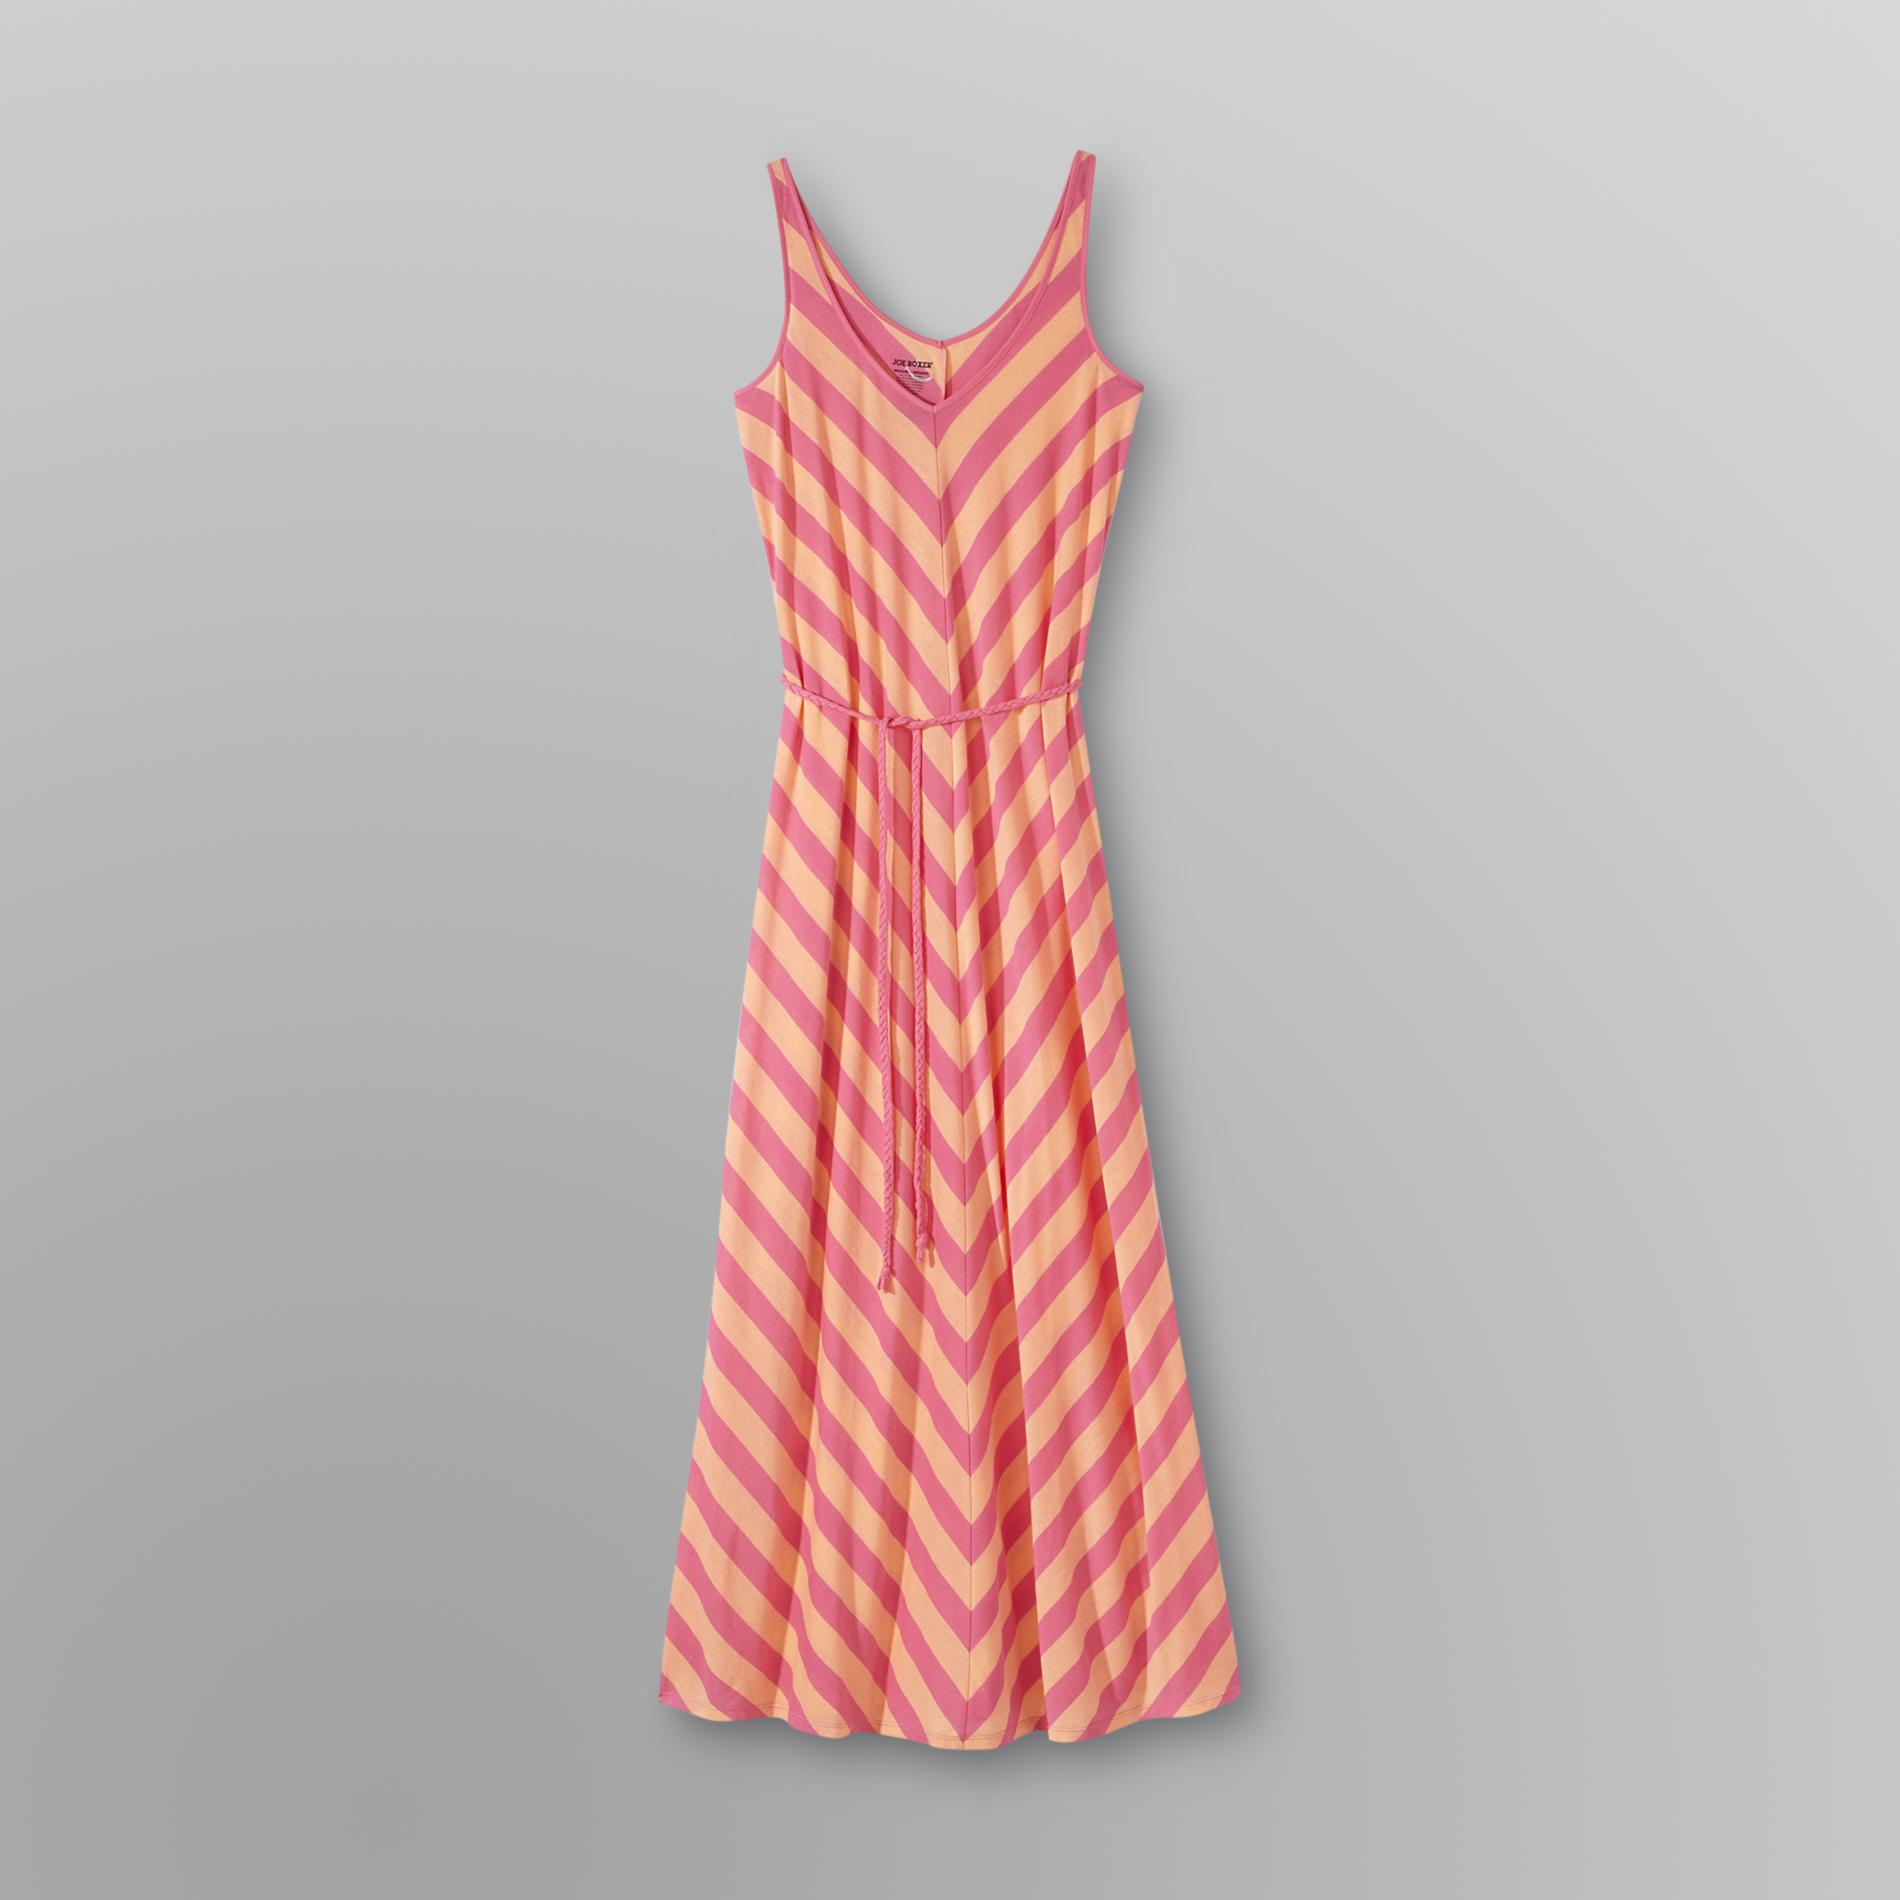 Joe Boxer Women's Plus Maxi Sleep Dress - Chevron Stripes